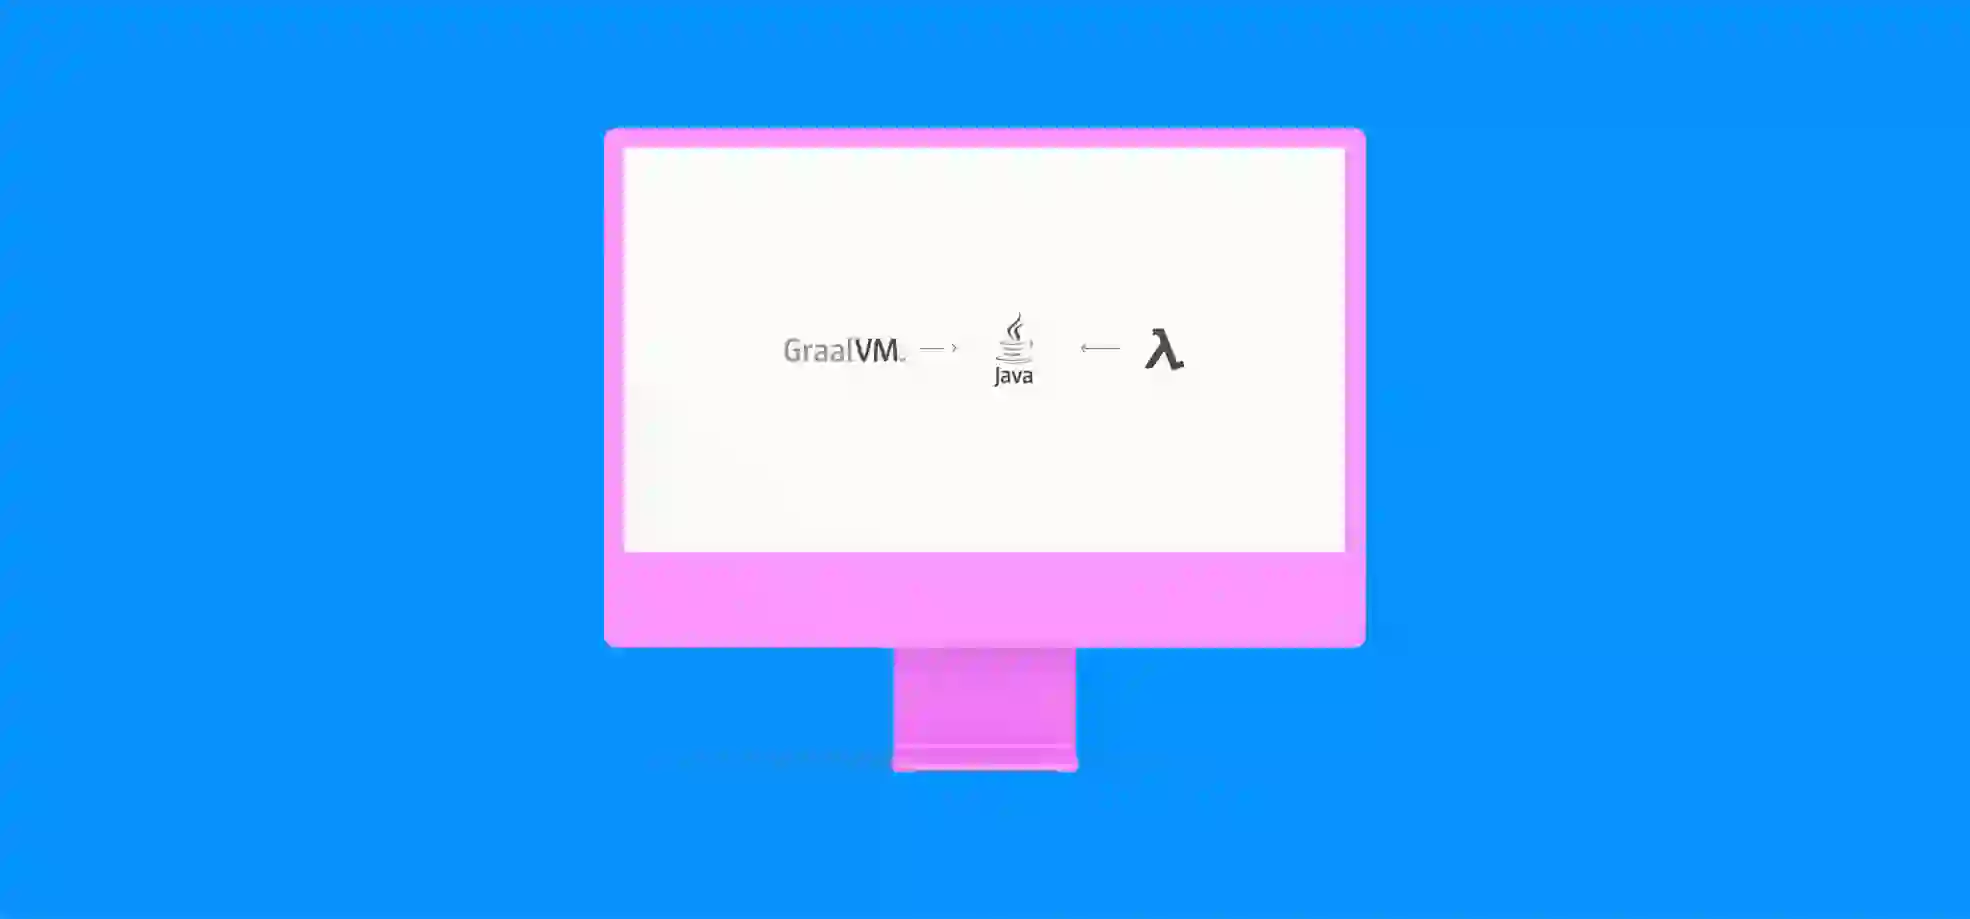 monitor with logos GraalVM, AWS Lambda and Java